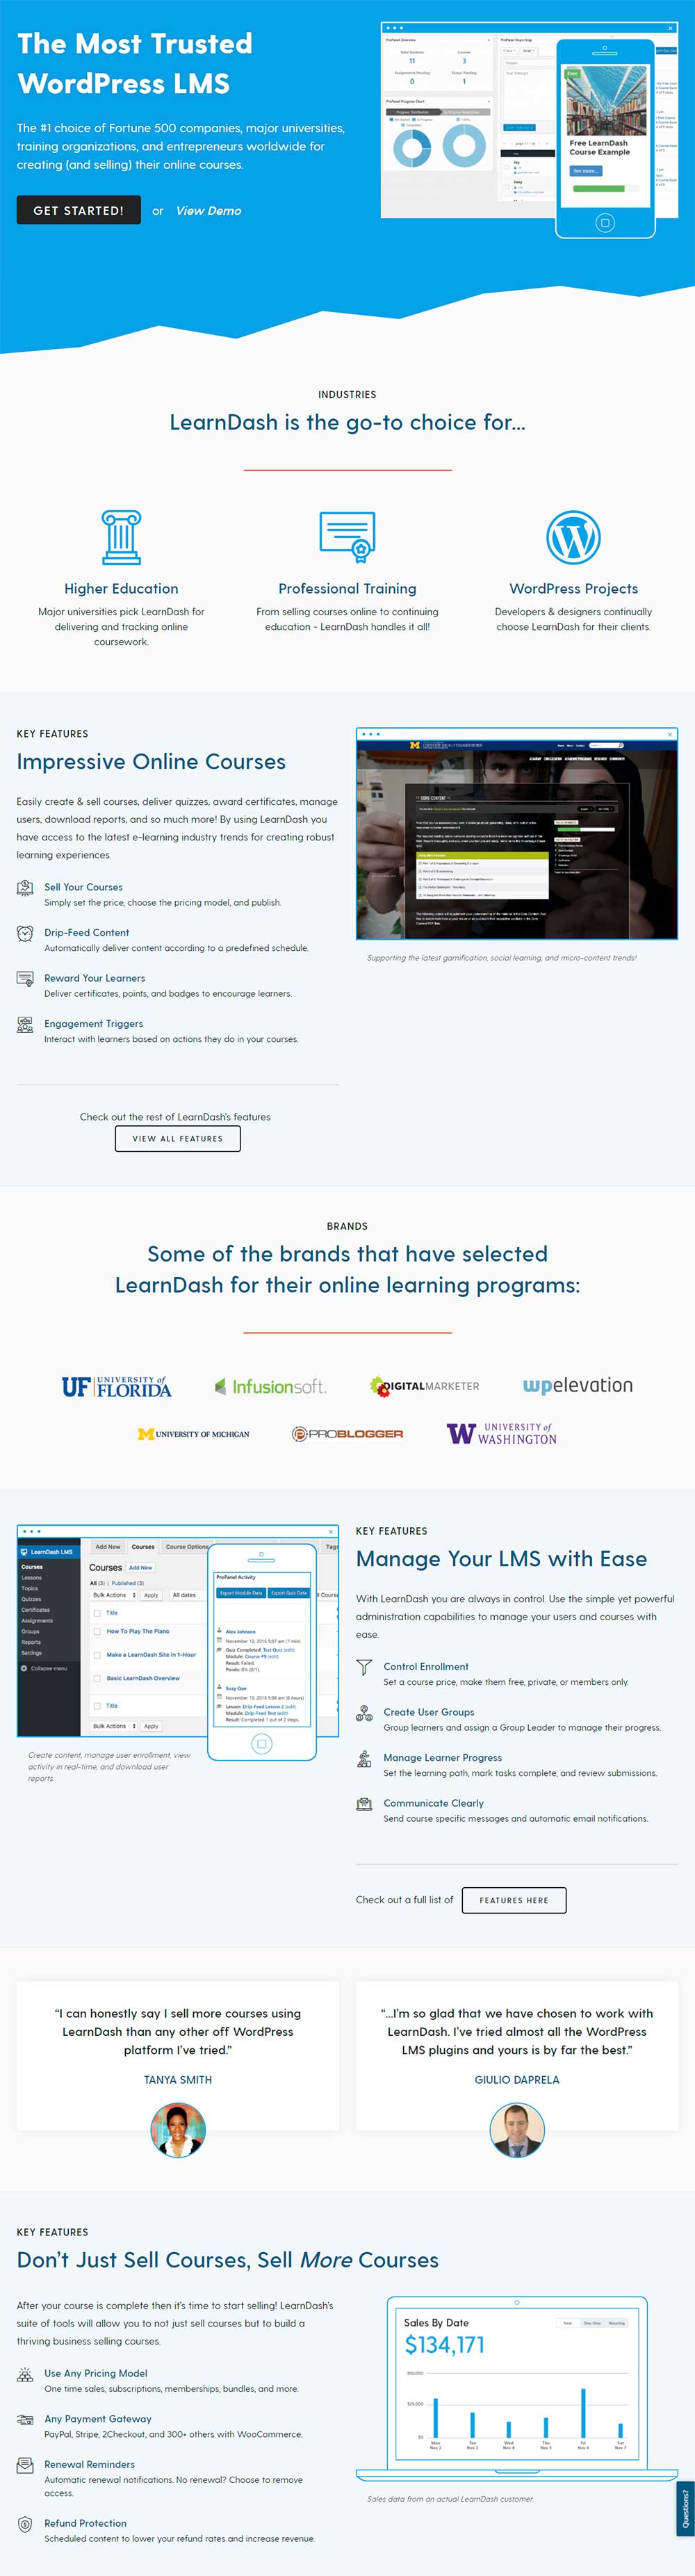 LearnDash - WordPress eLearning LMS Plugin